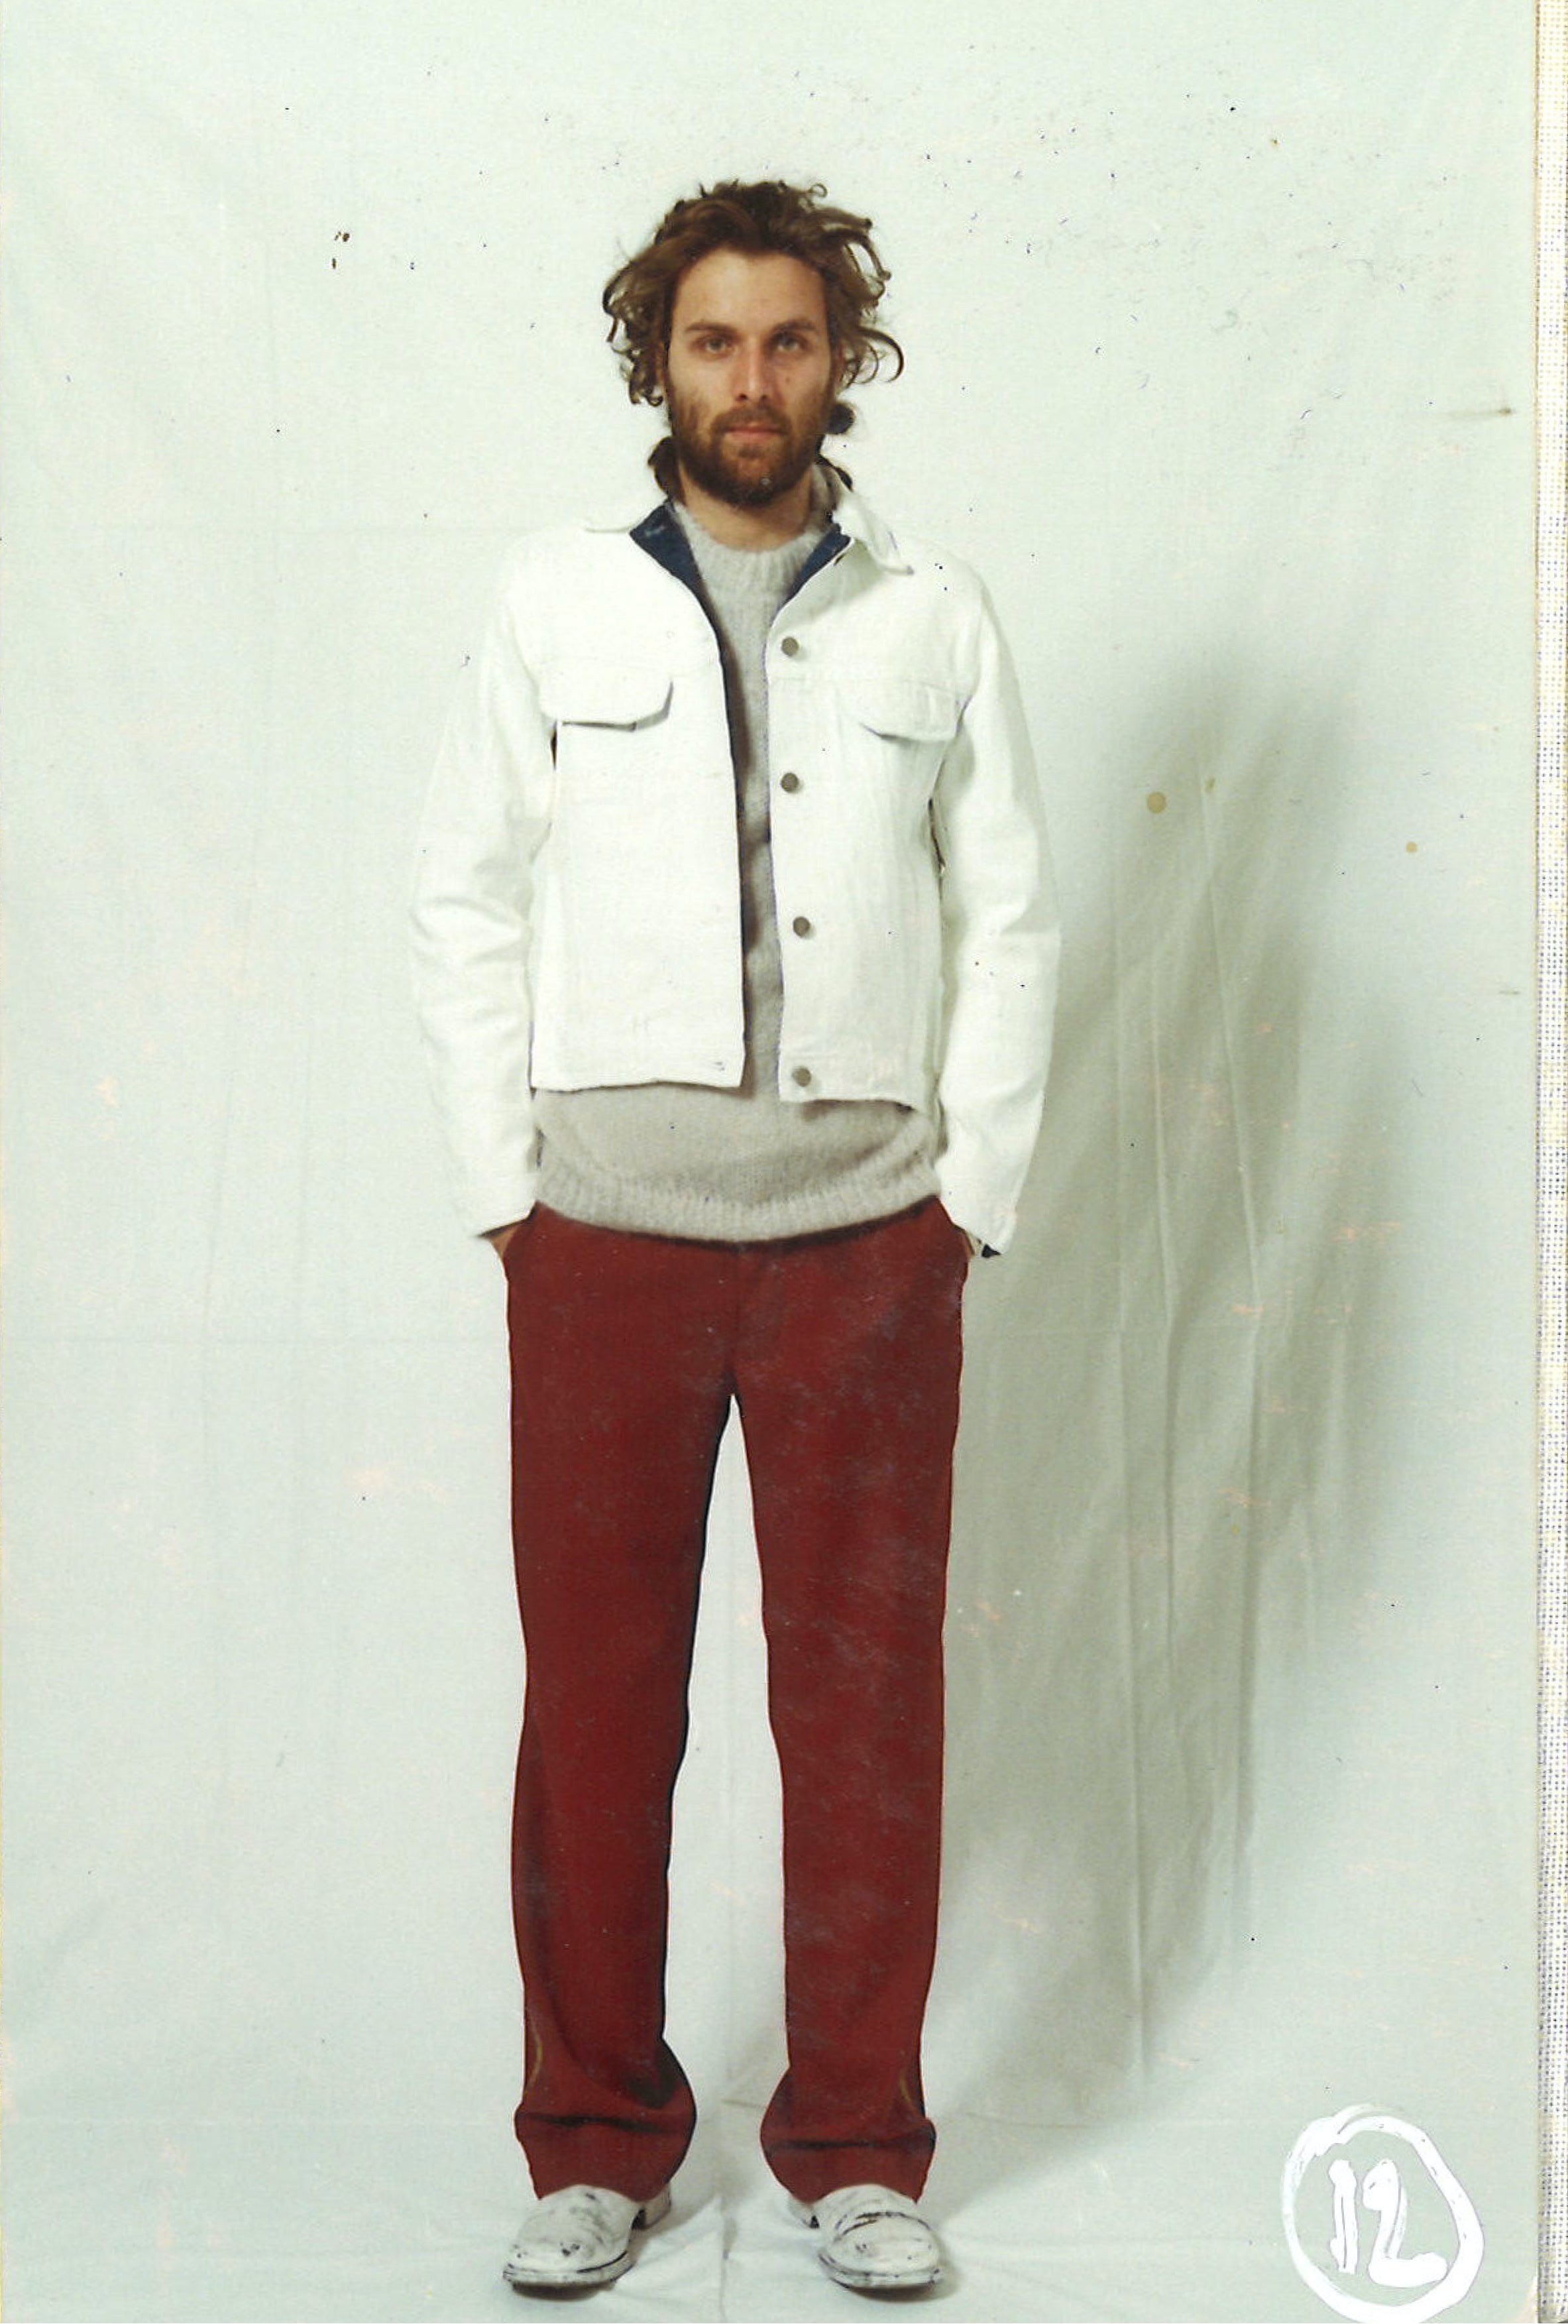 Maison Martin Margiela Lookbook
Menswear Collection Autumn/Winter 2001-02